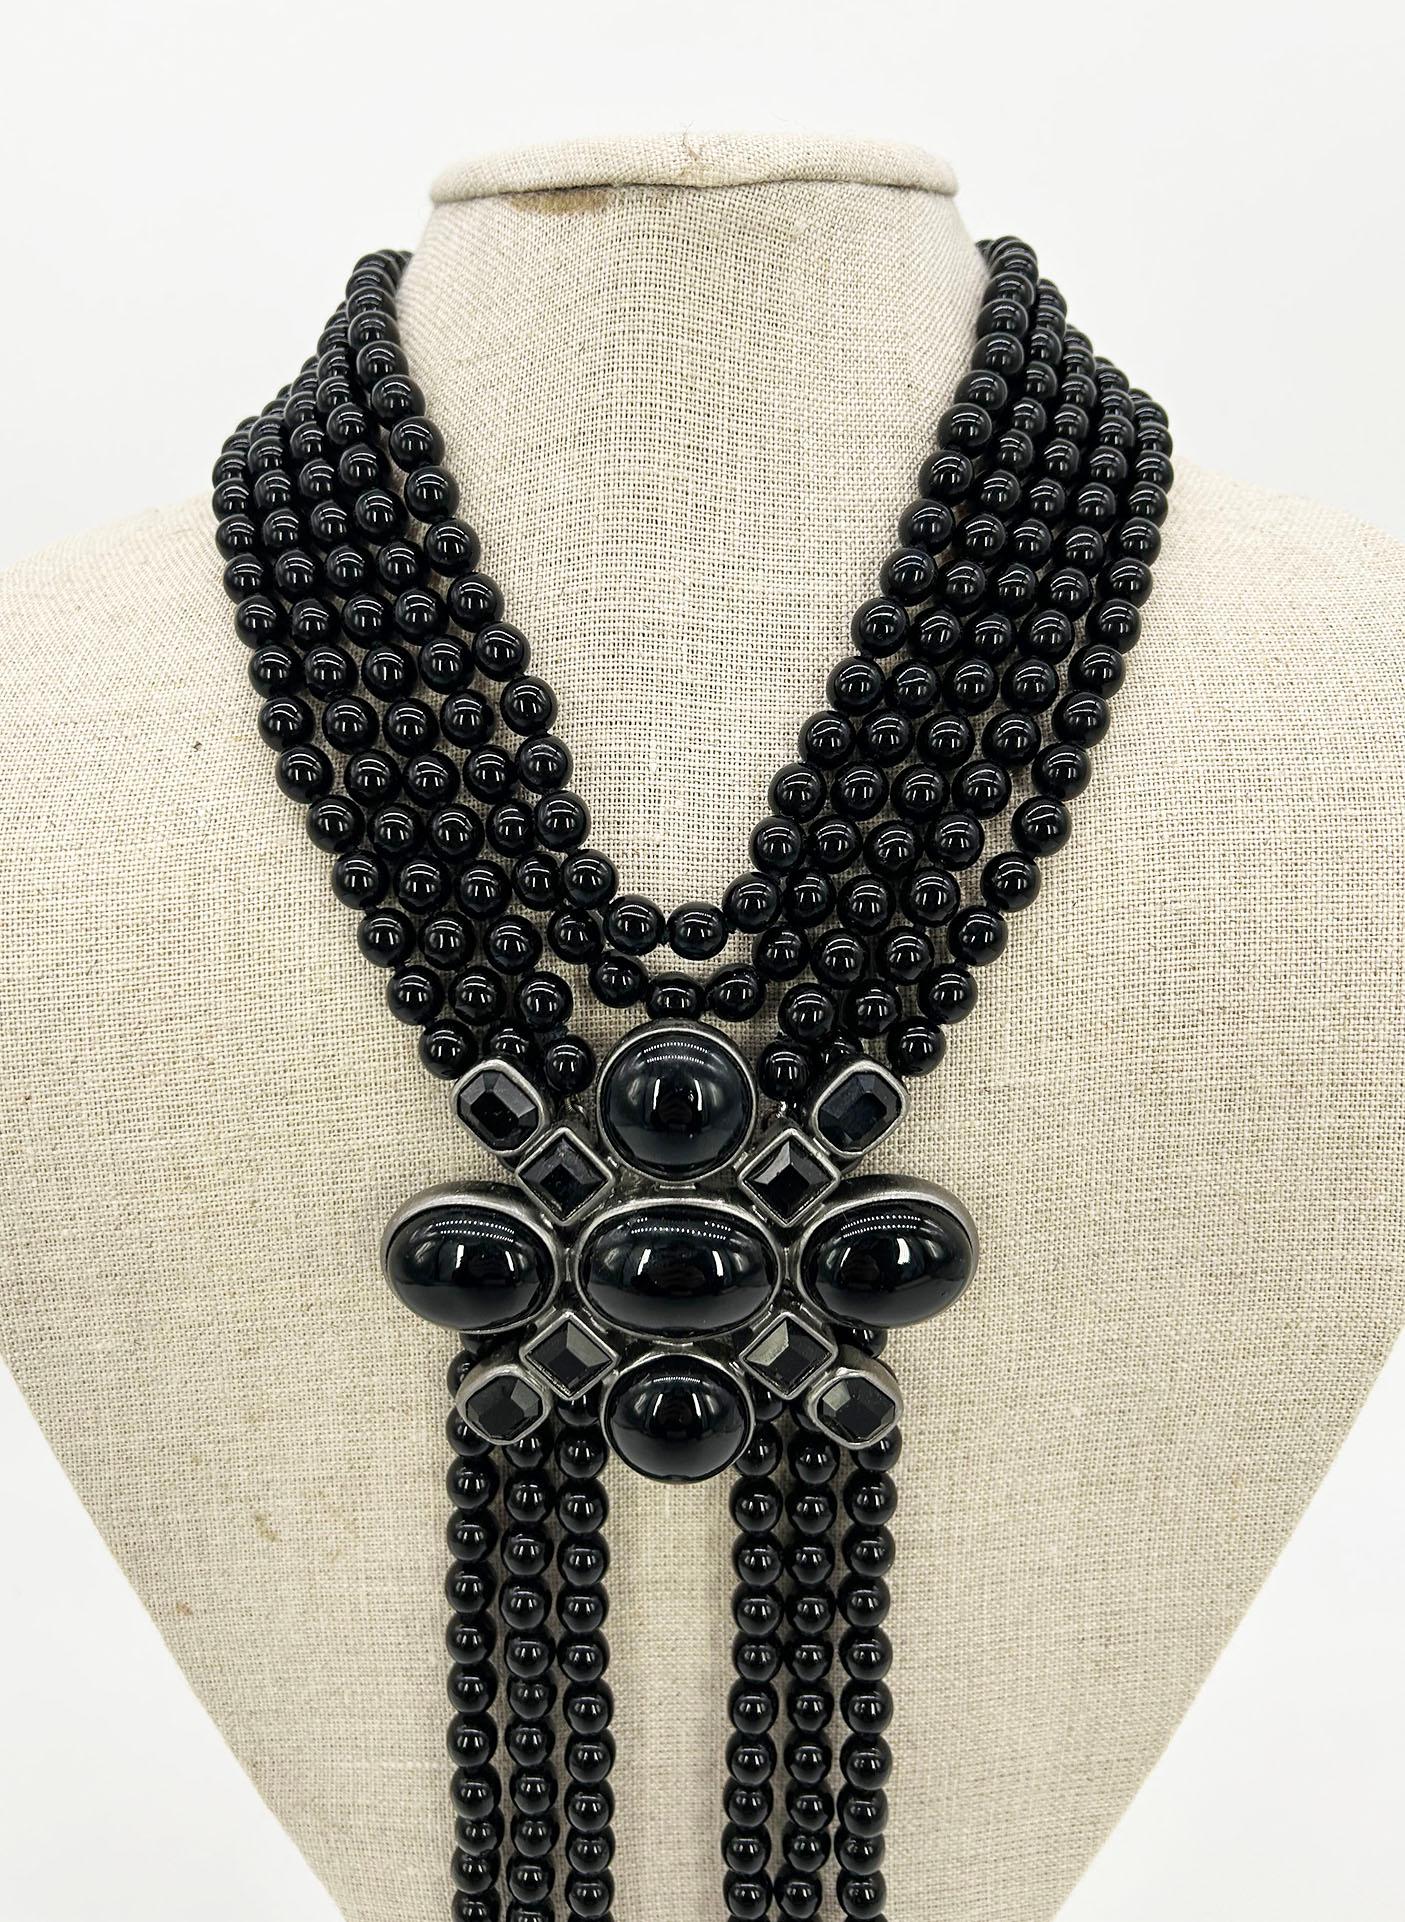 Chanel Black Beaded Multi Strand Emblem Halskette in ausgezeichnetem Zustand. Schwarze Perlen mit silberner Hardware. Schwarze Gripoix-Verzierung in der Mitte. Der obere Teil der Kette besteht aus 5 Reihen von Perlen, während der untere Teil (unter